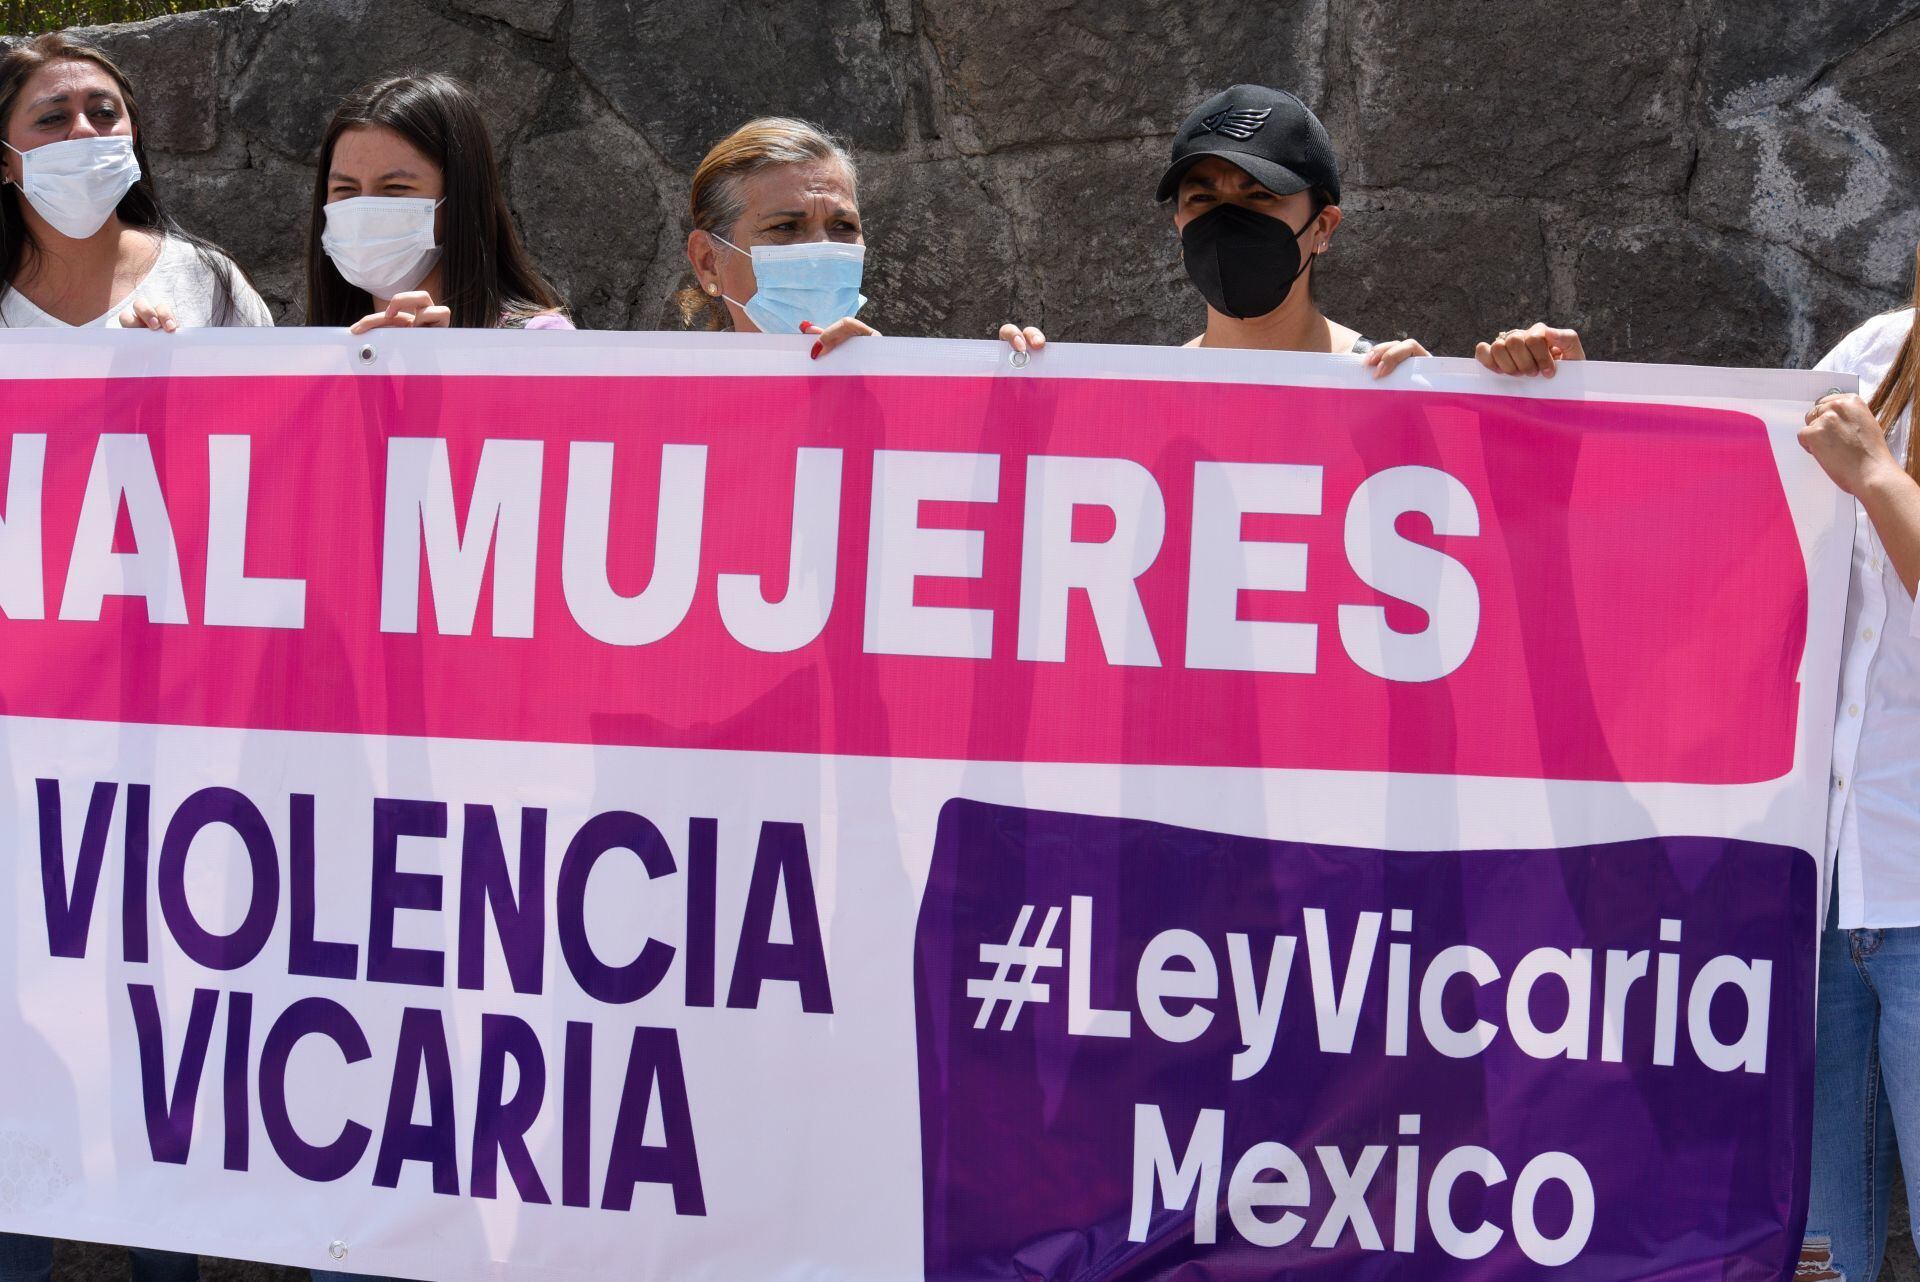 La violencia vicaria en México ya es delito